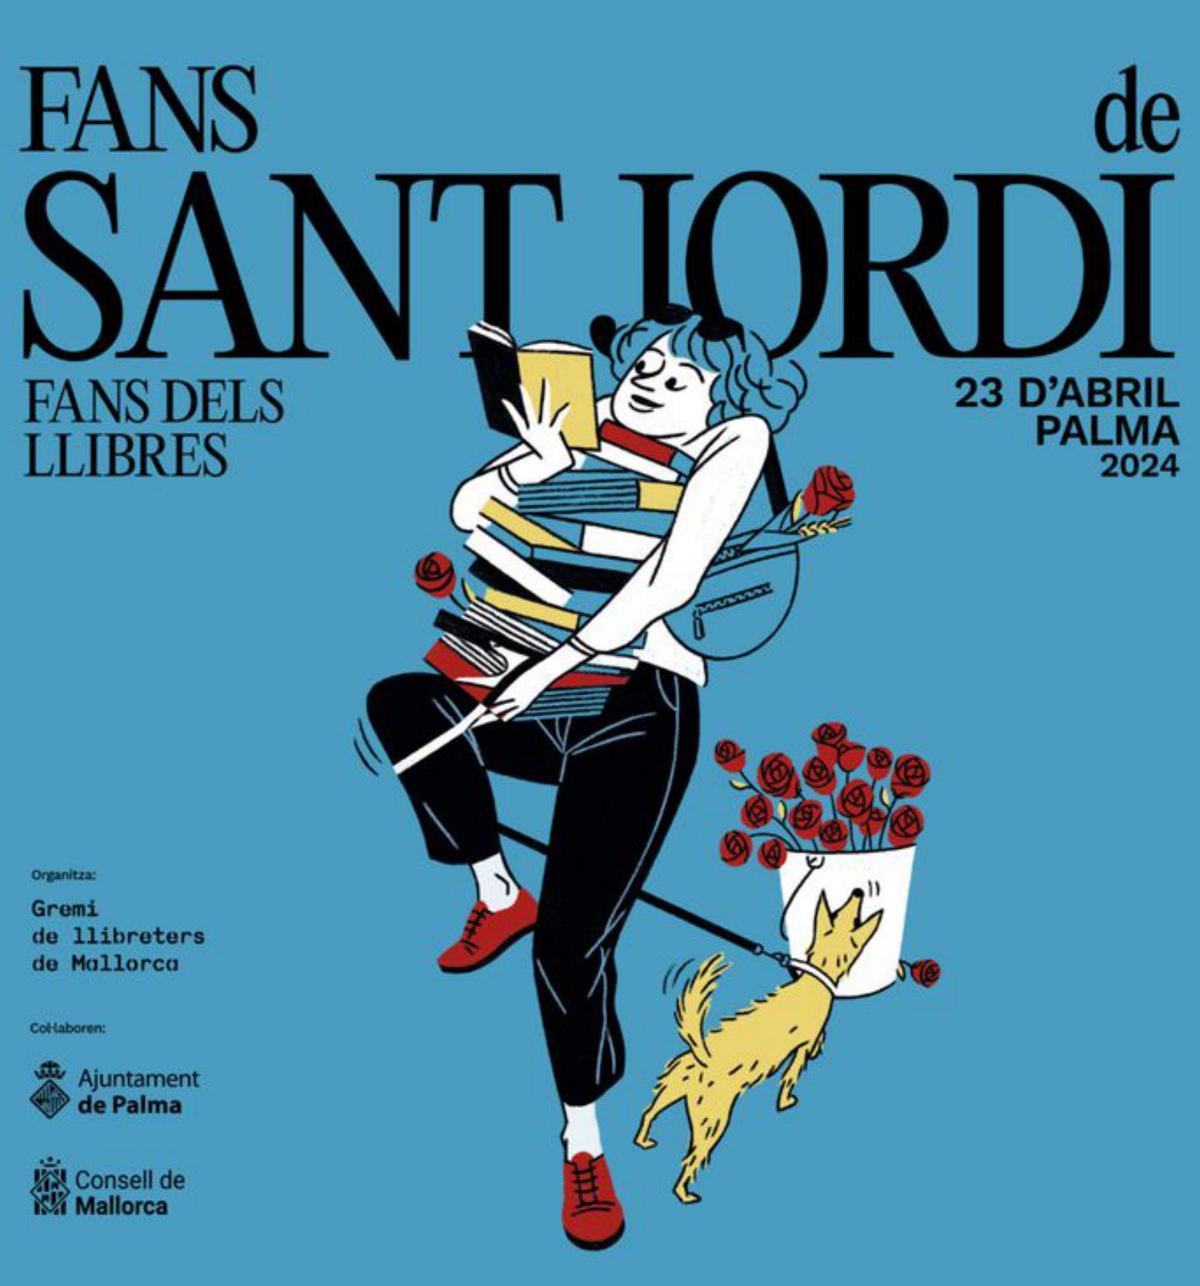 El cartel de este Sant Jordi ha sido diseñado por la ilustradora isleña Flavia Gargiulo.